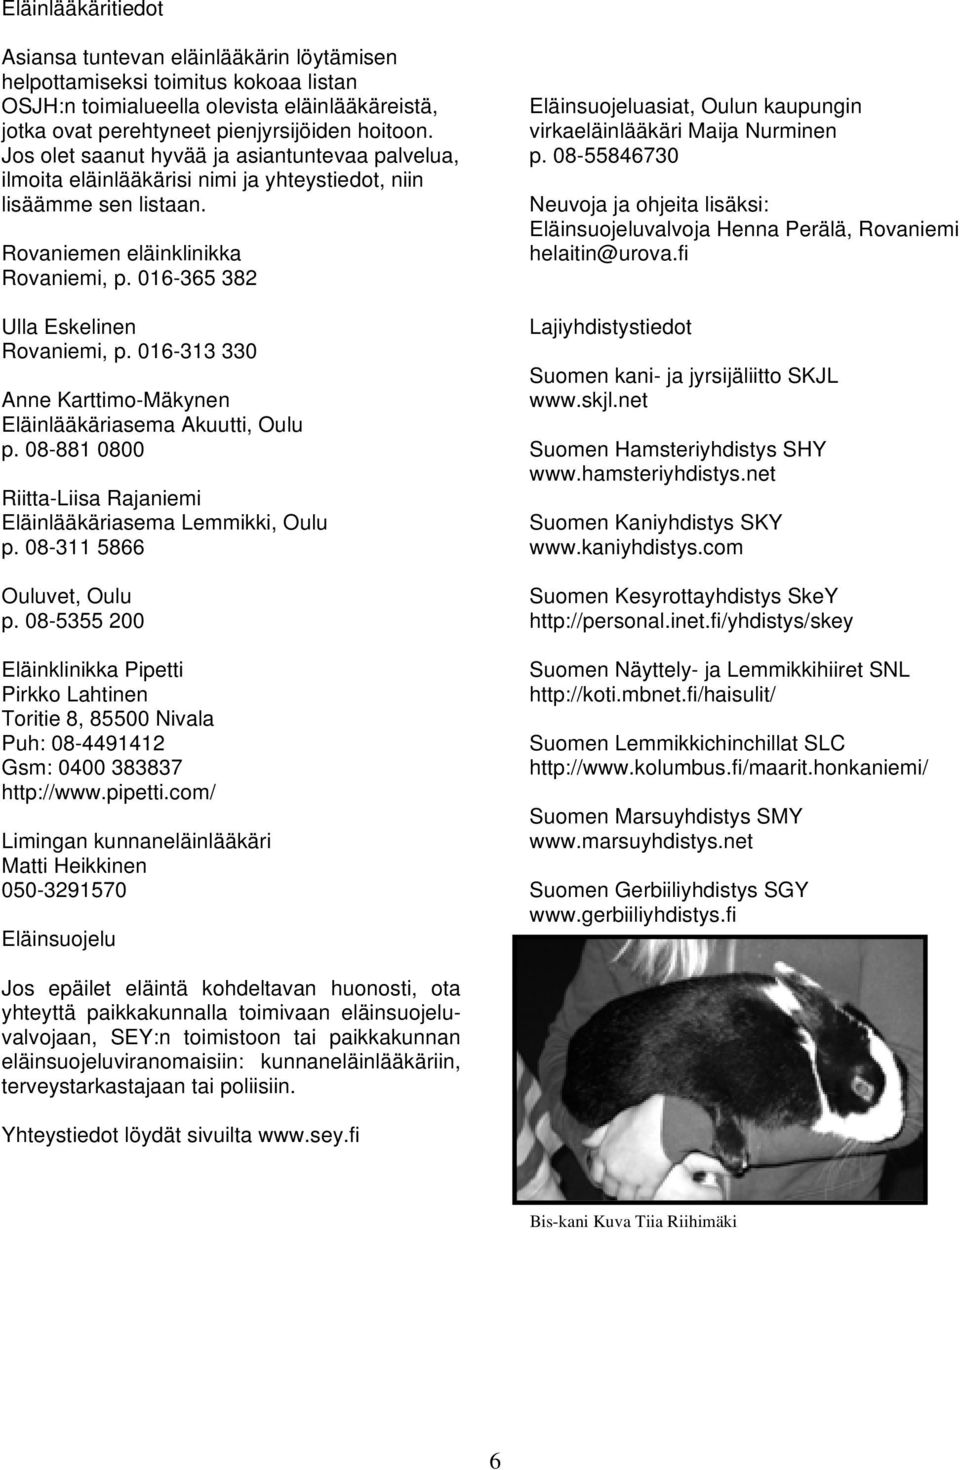 016-313 330 Anne Karttimo-Mäkynen Eläinlääkäriasema Akuutti, Oulu p. 08-881 0800 Riitta-Liisa Rajaniemi Eläinlääkäriasema Lemmikki, Oulu p. 08-311 5866 Ouluvet, Oulu p.